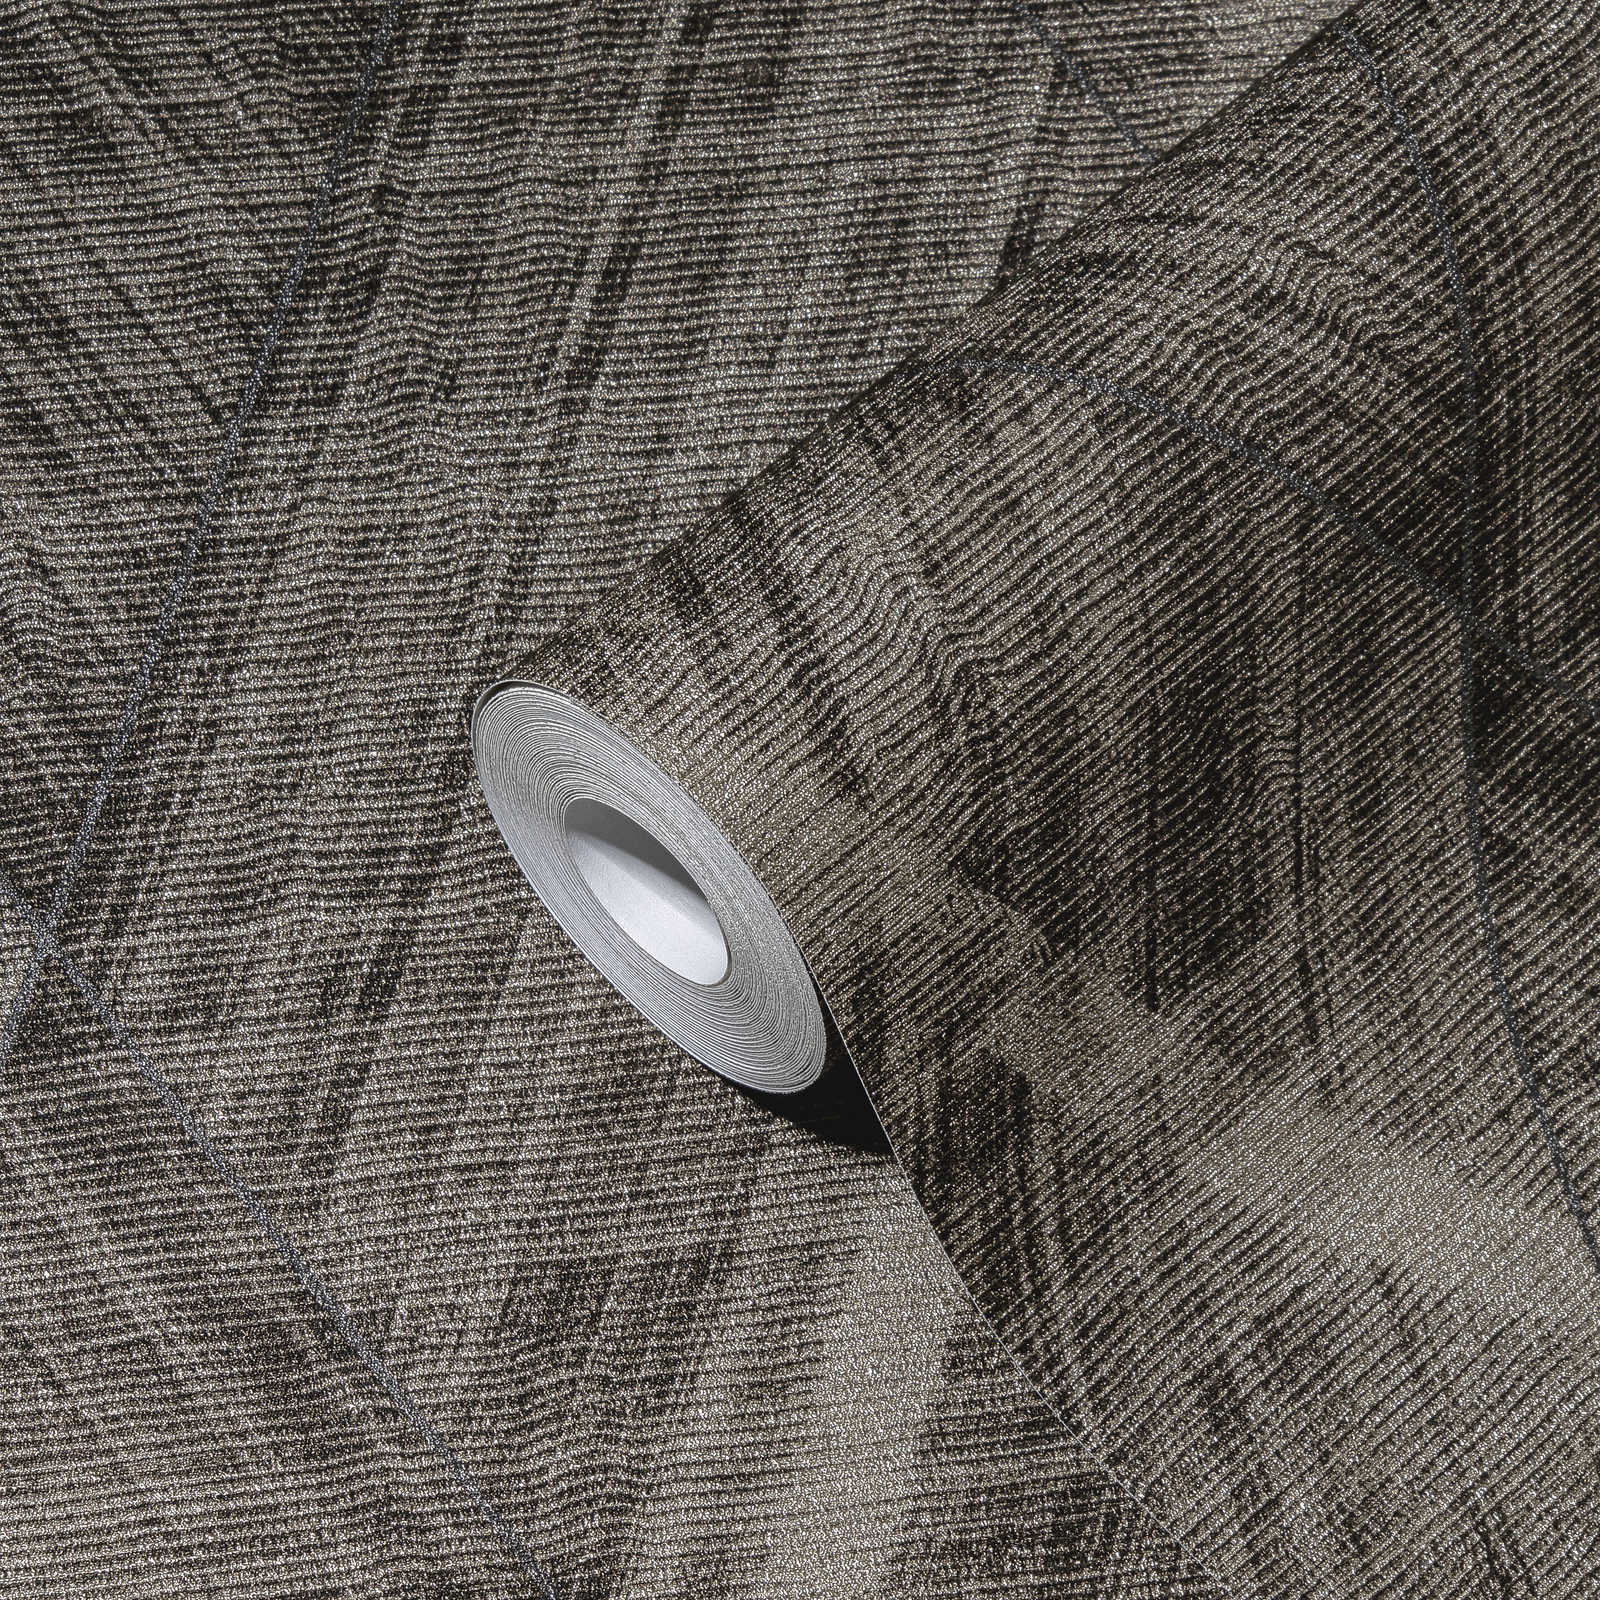             Textielachtig behangpapier met ruitmotief - metallic, grijs
        